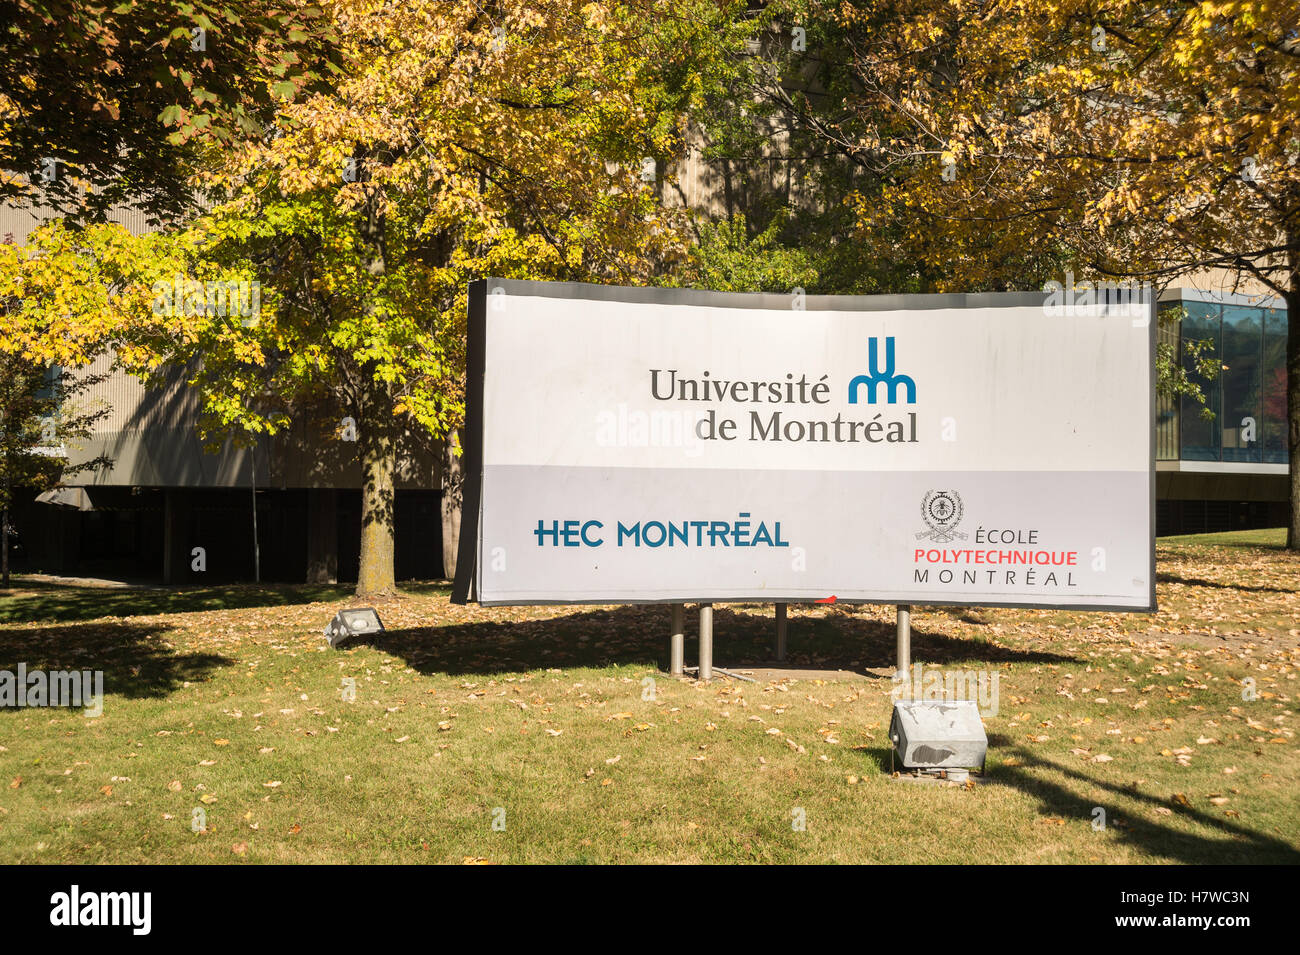 HEC Montreal (Ecole des Hautes Etudes Commerciales de Montreal) business and management school Stock Photo